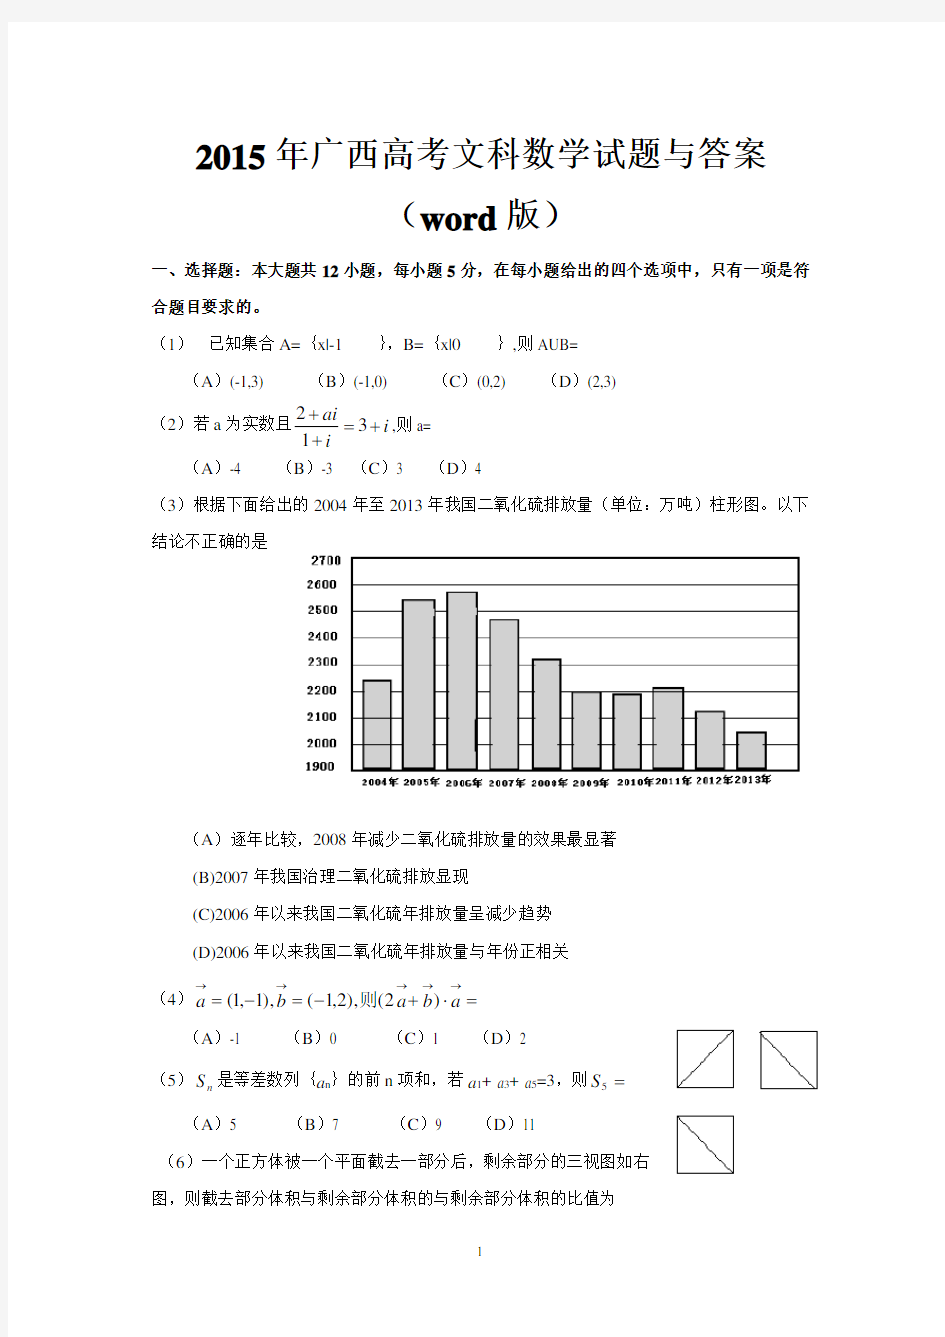 2015年广西高考文科数学试题与答案(word版)